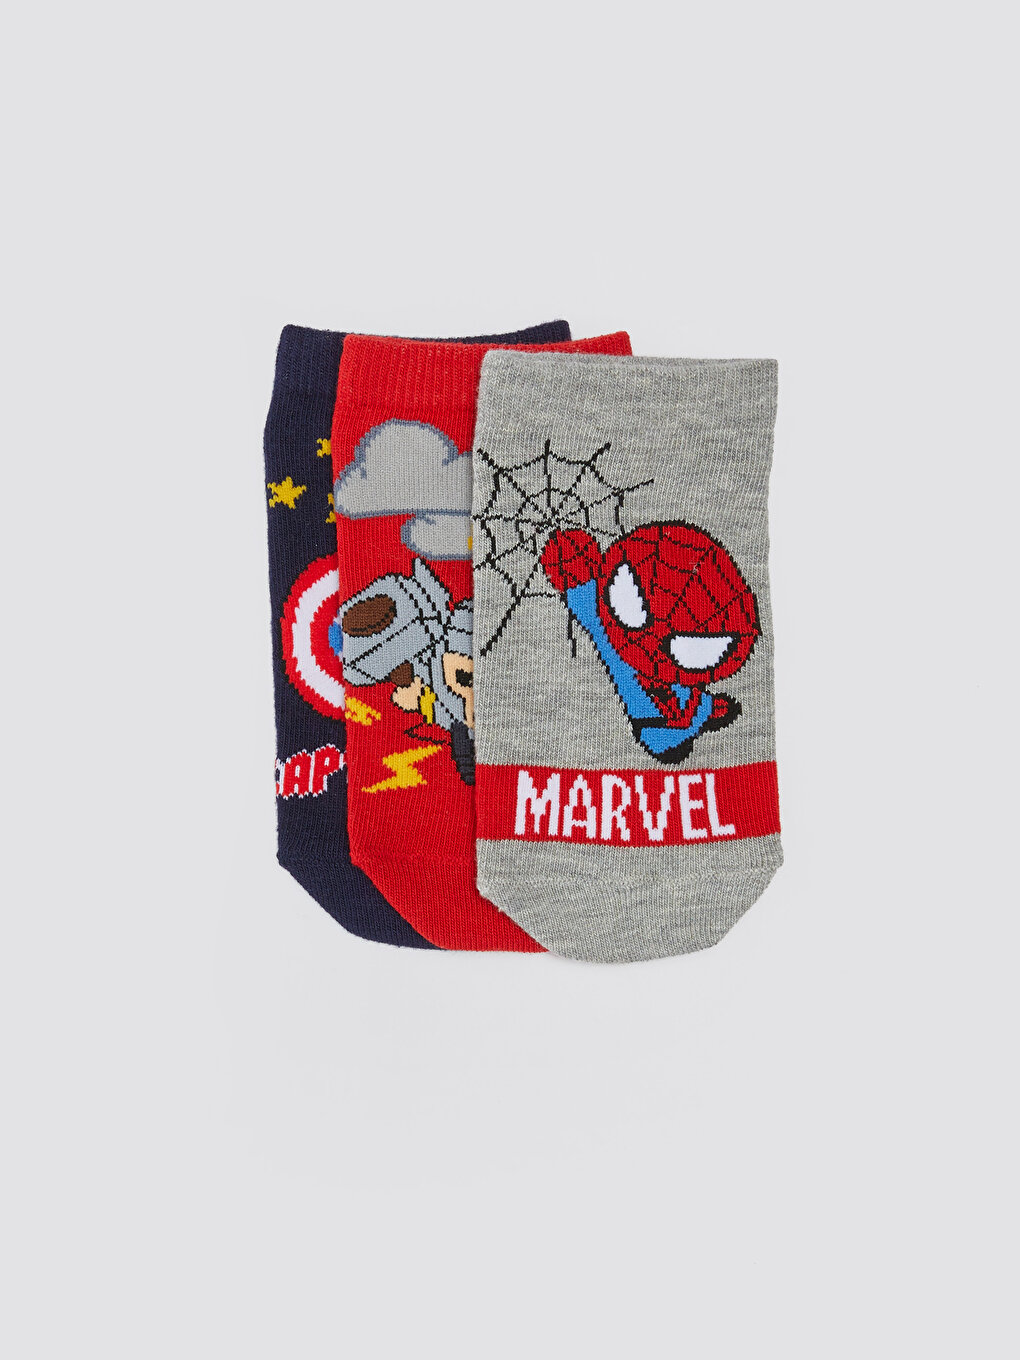 Marvel Patterned Boys Booties Socks 3 Pack -S39169Z4-K00 - S39169Z4-K00 -  LC Waikiki